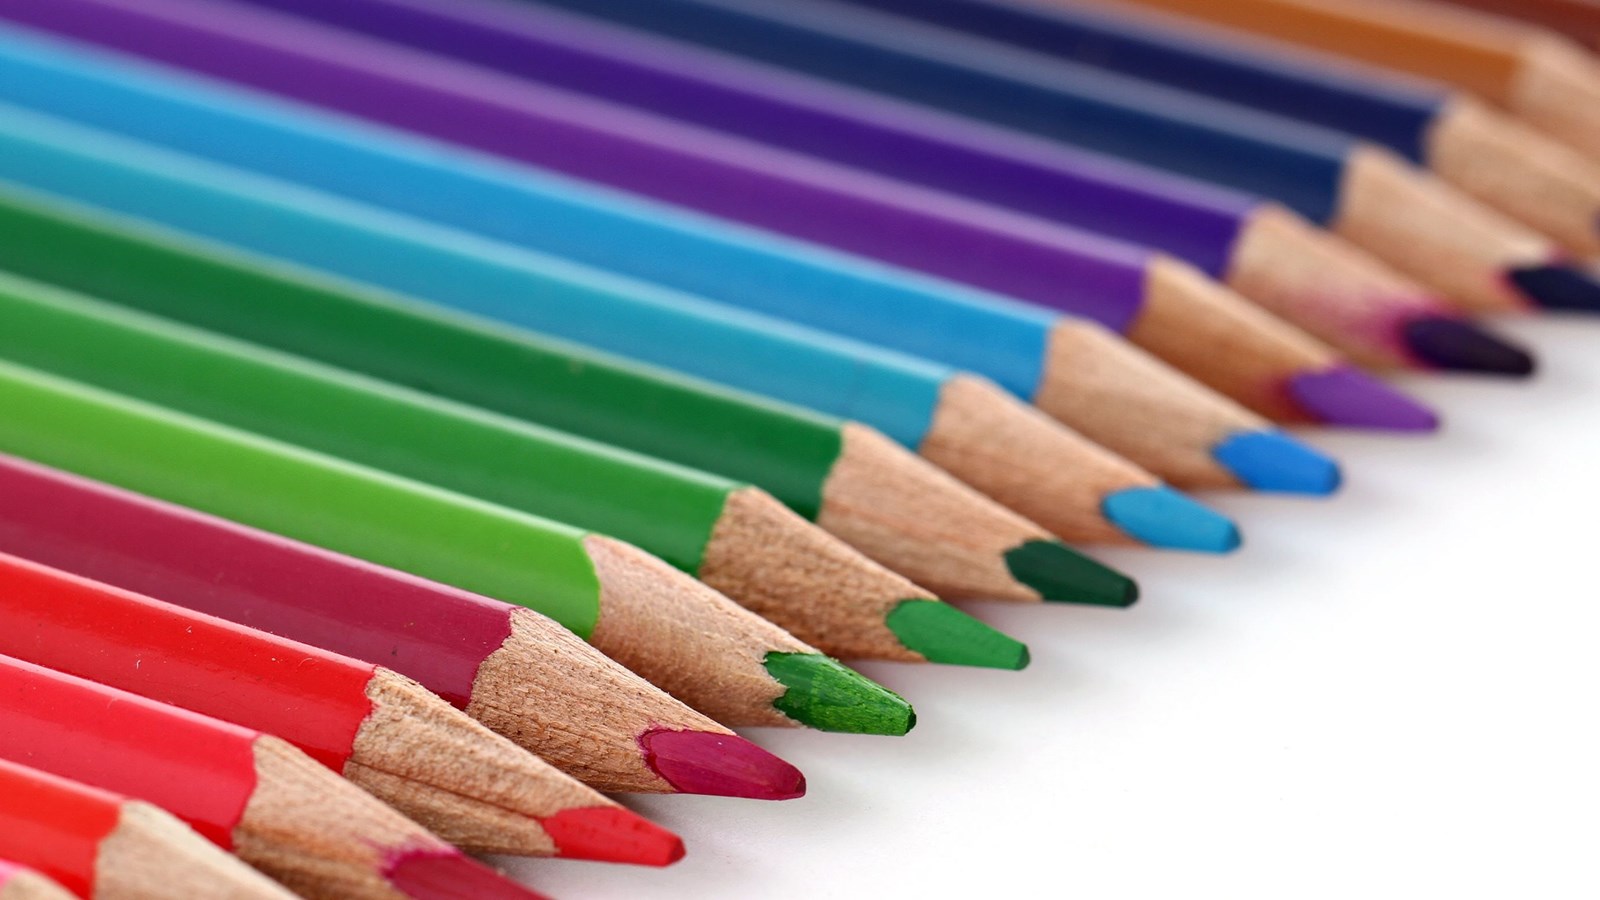 School supplies colored pencils